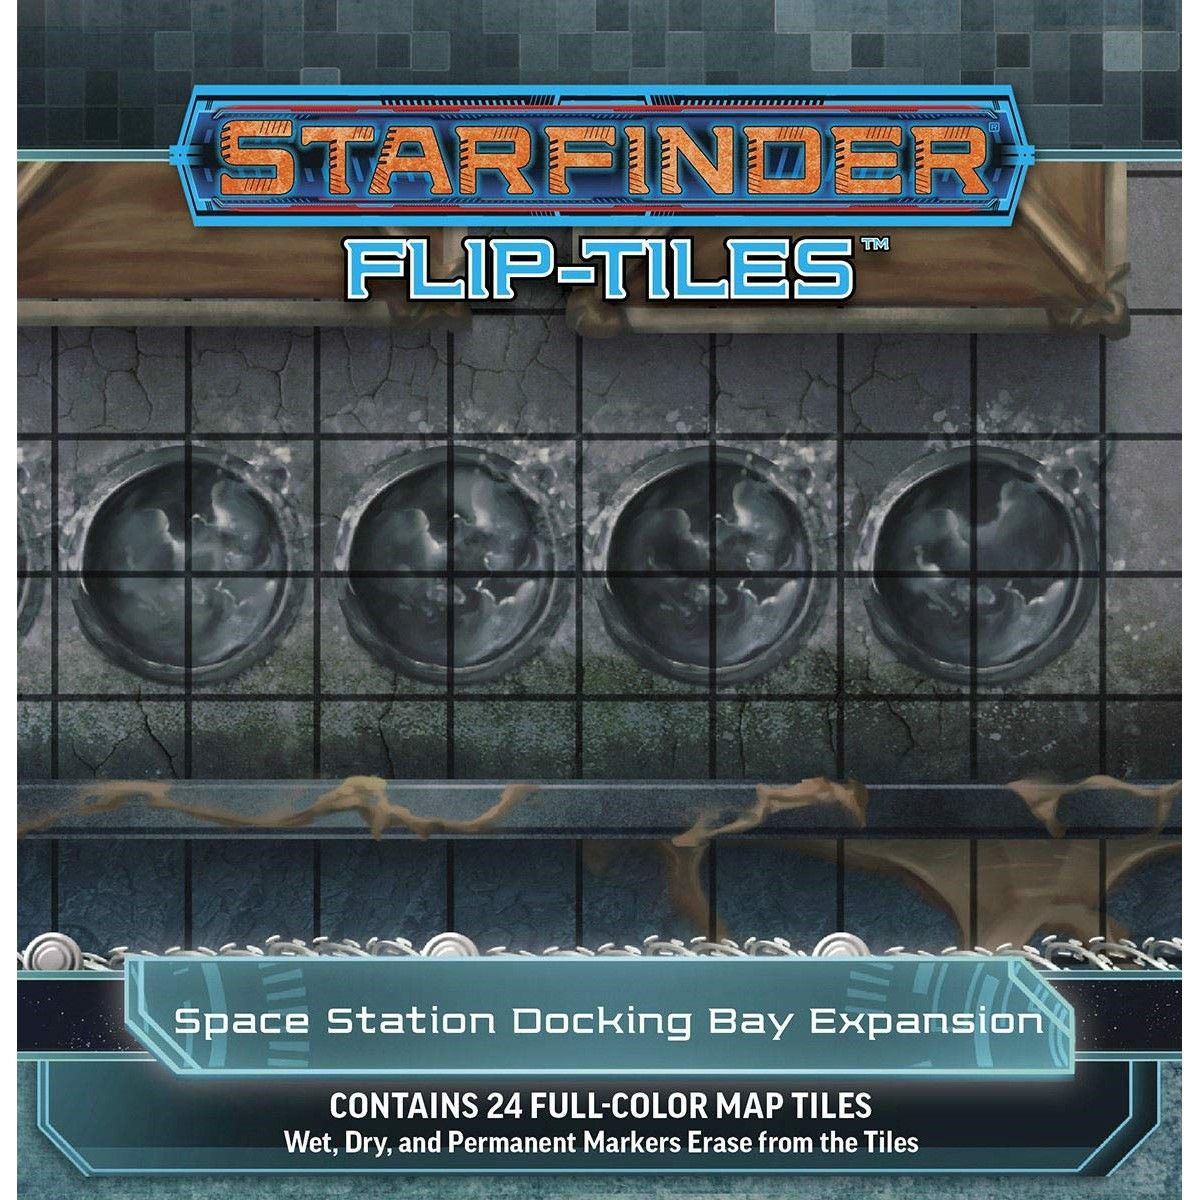 Starfinder RPG Flip Tiles: Space Station Docking Bay Expansion